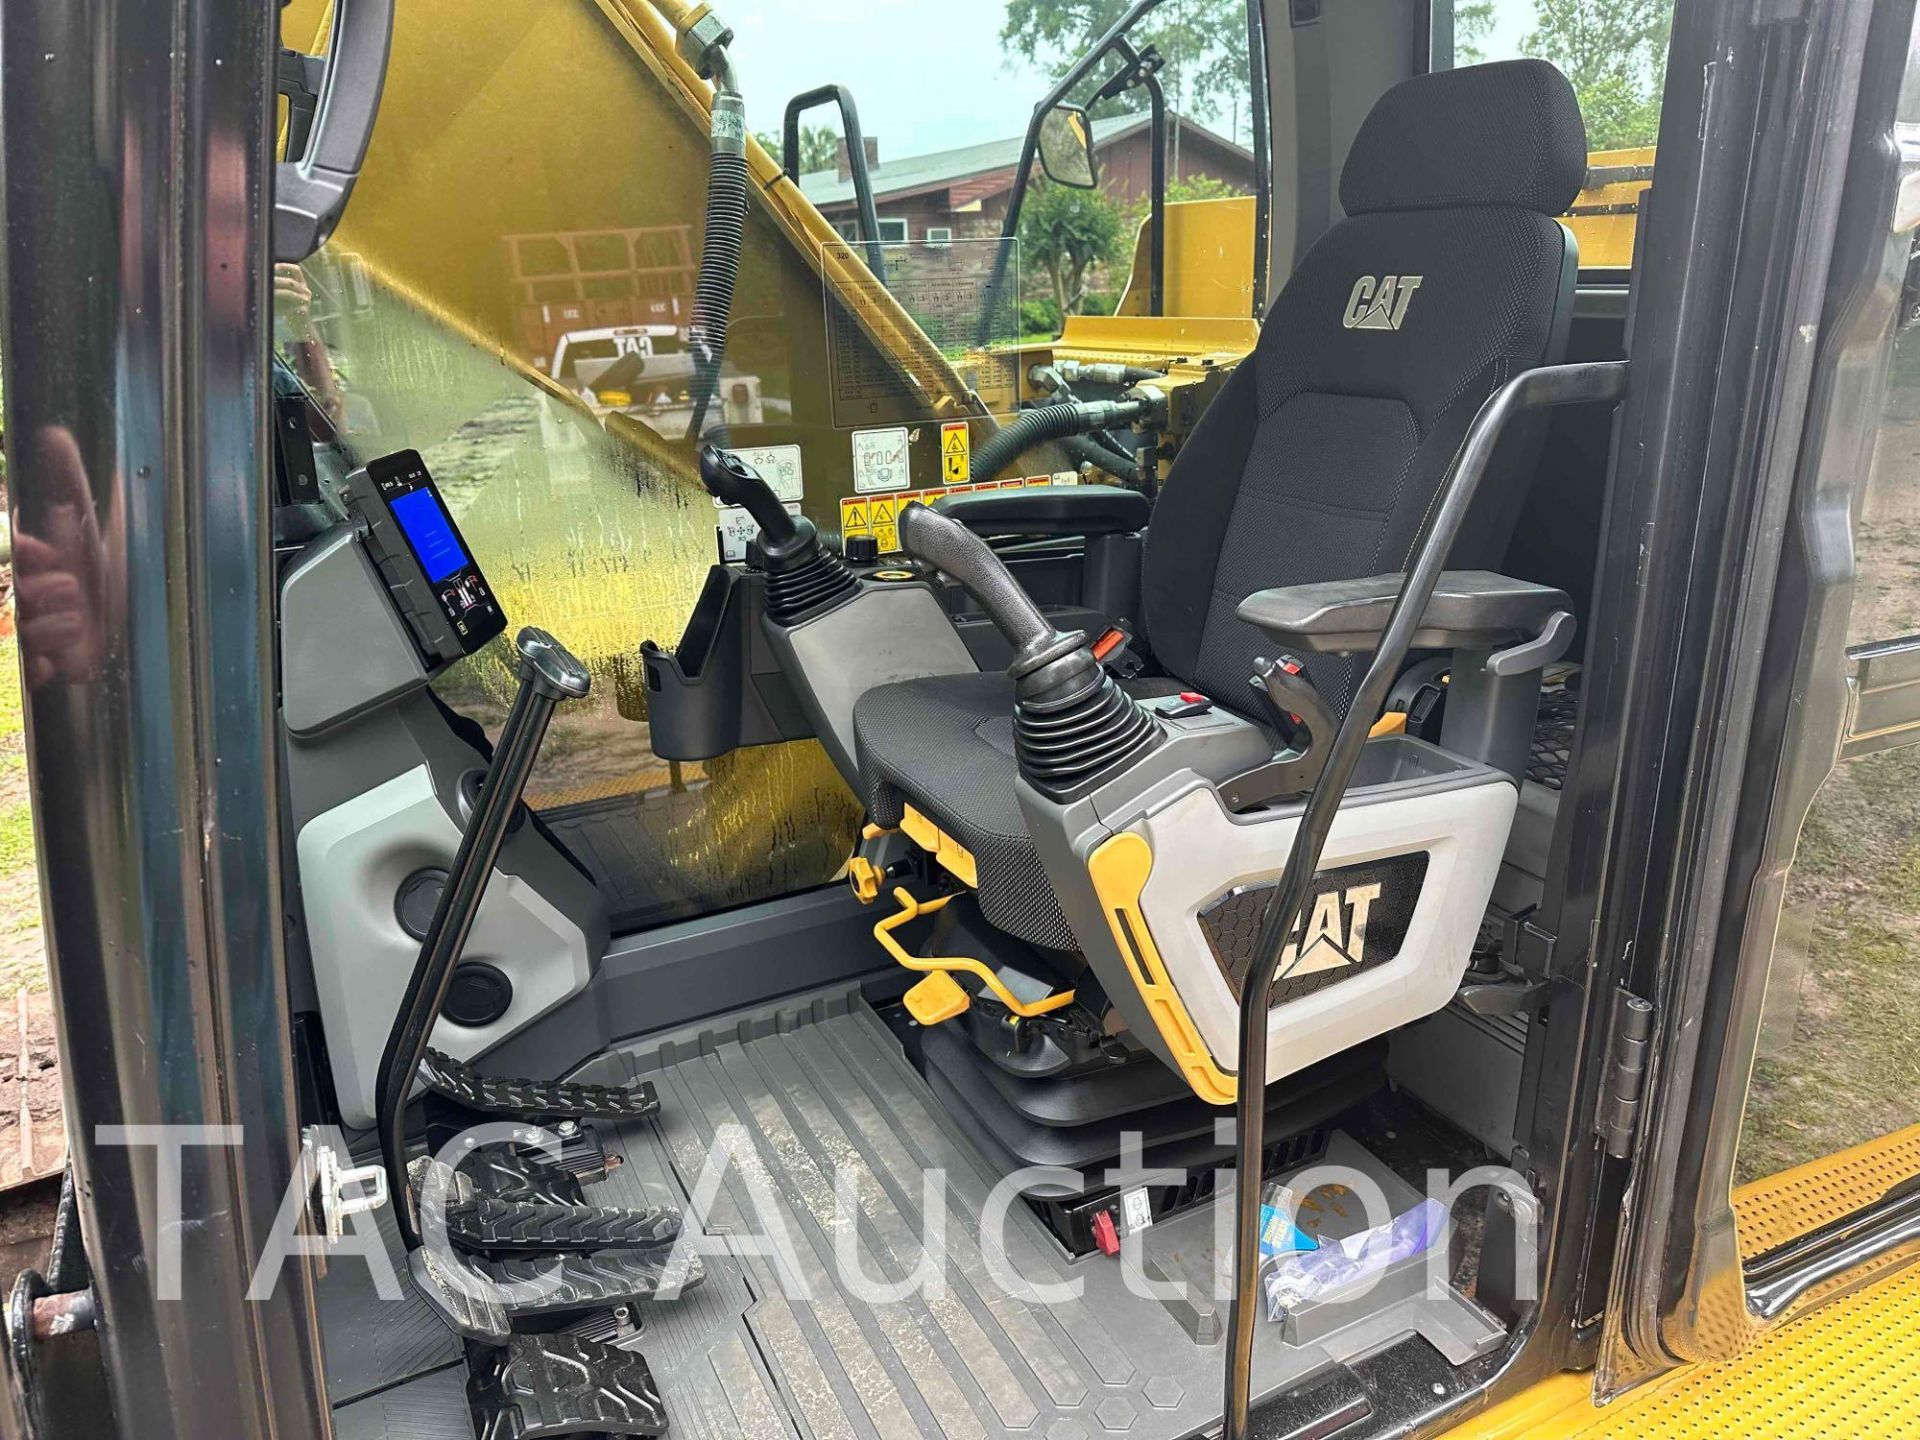 2018 CAT 320 Hydraulic Excavator - Image 23 of 82